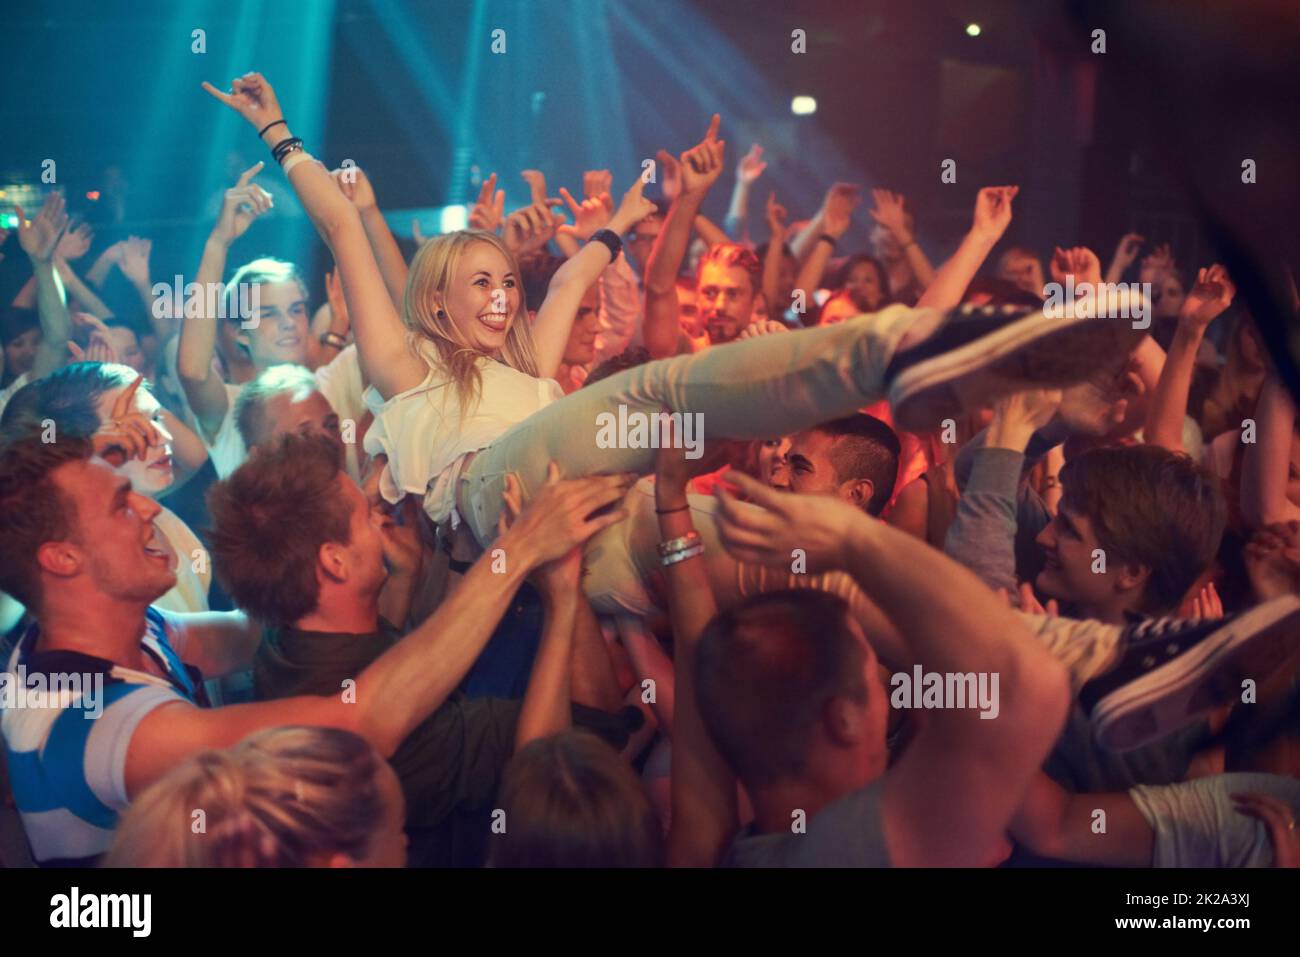 Propre nuit. Photo rognée d'une foule de femmes surfant à un festival de musique. Banque D'Images